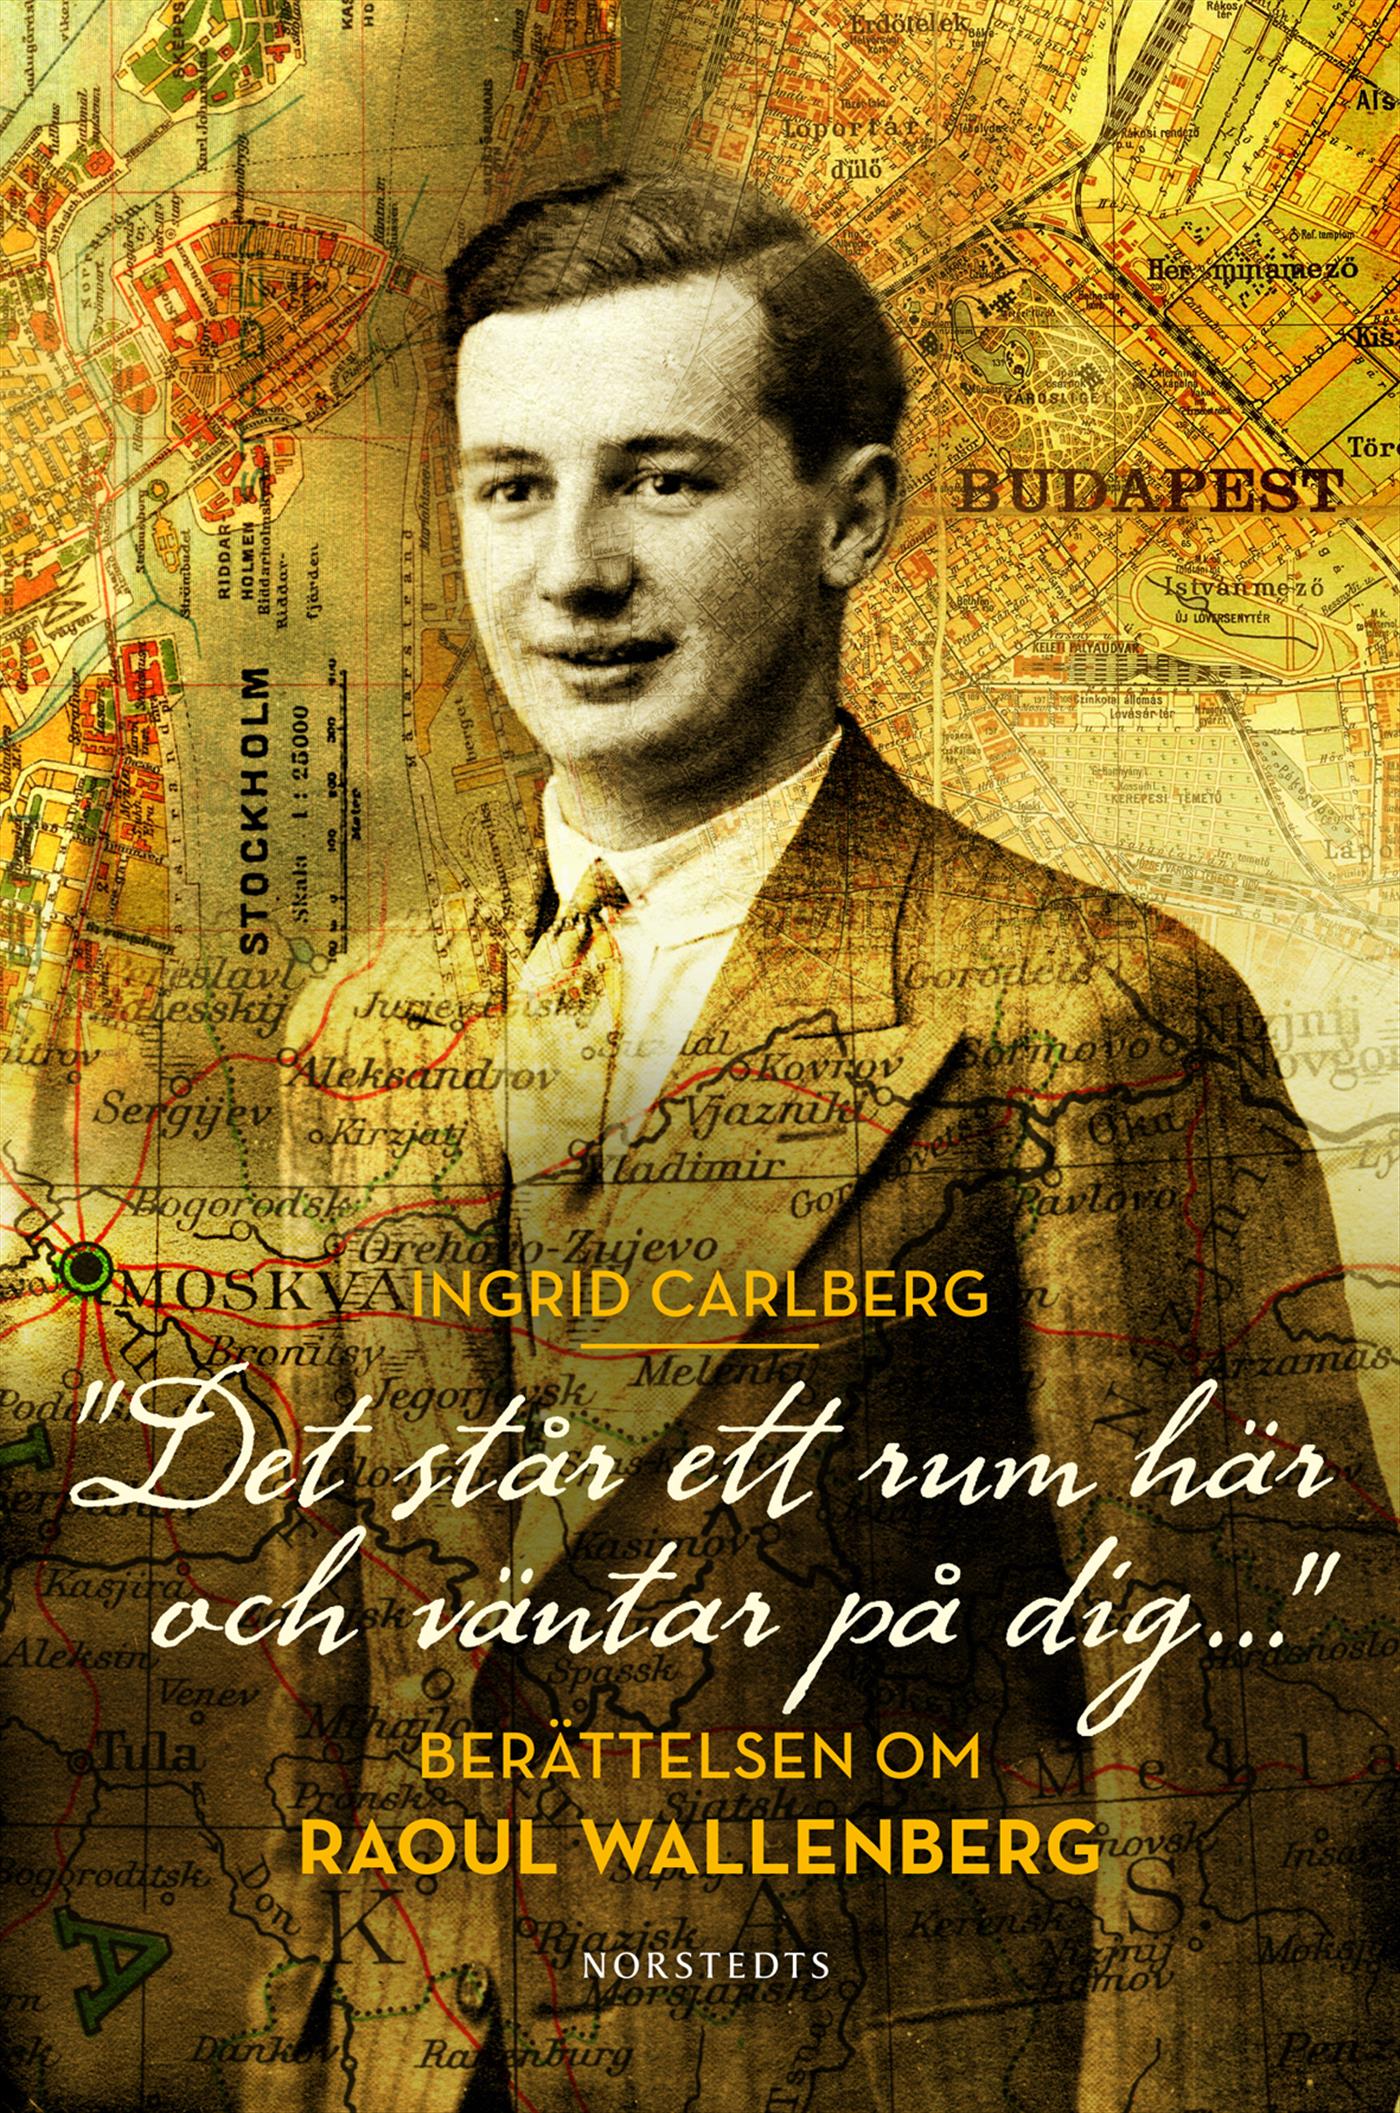 "Det står ett rum här och väntar på dig ..." : berättelsen om Raoul Wallenberg – E-bok